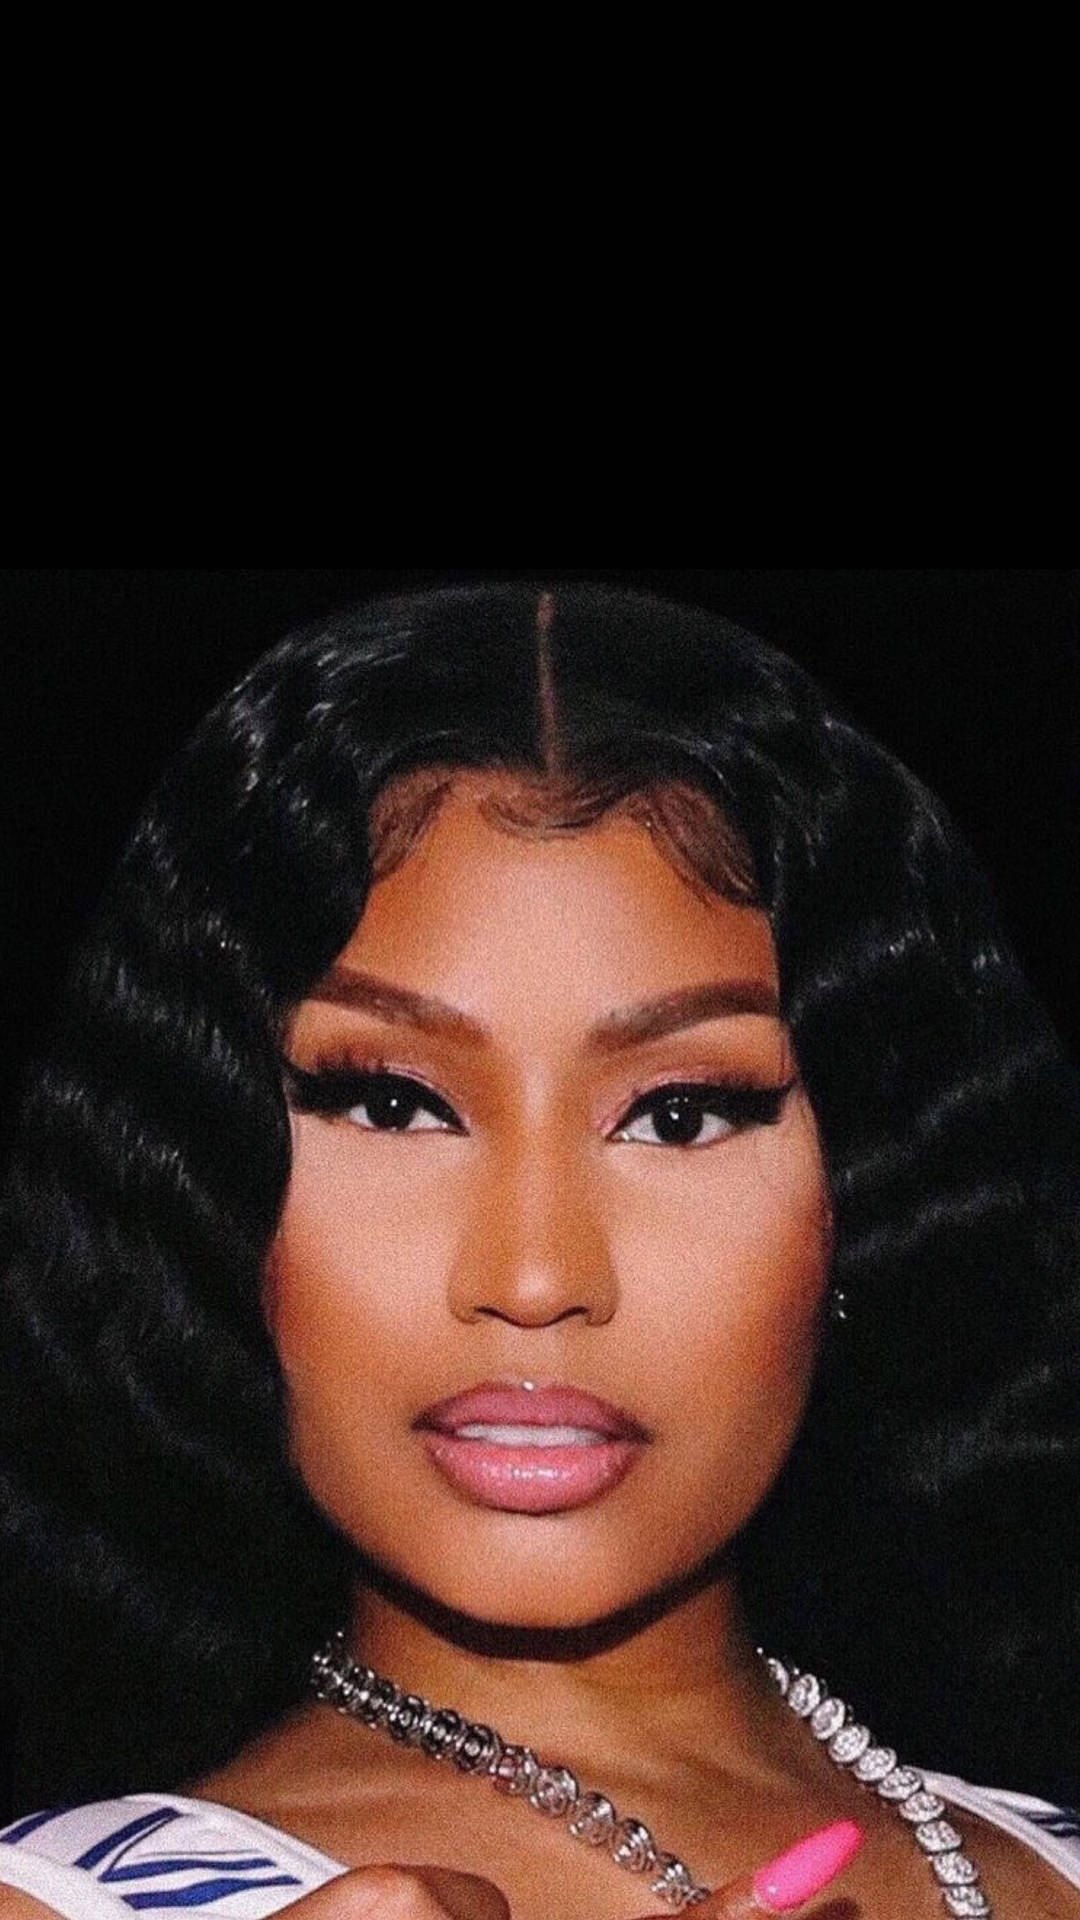 Nicki Minaj Close-up Image Wallpaper